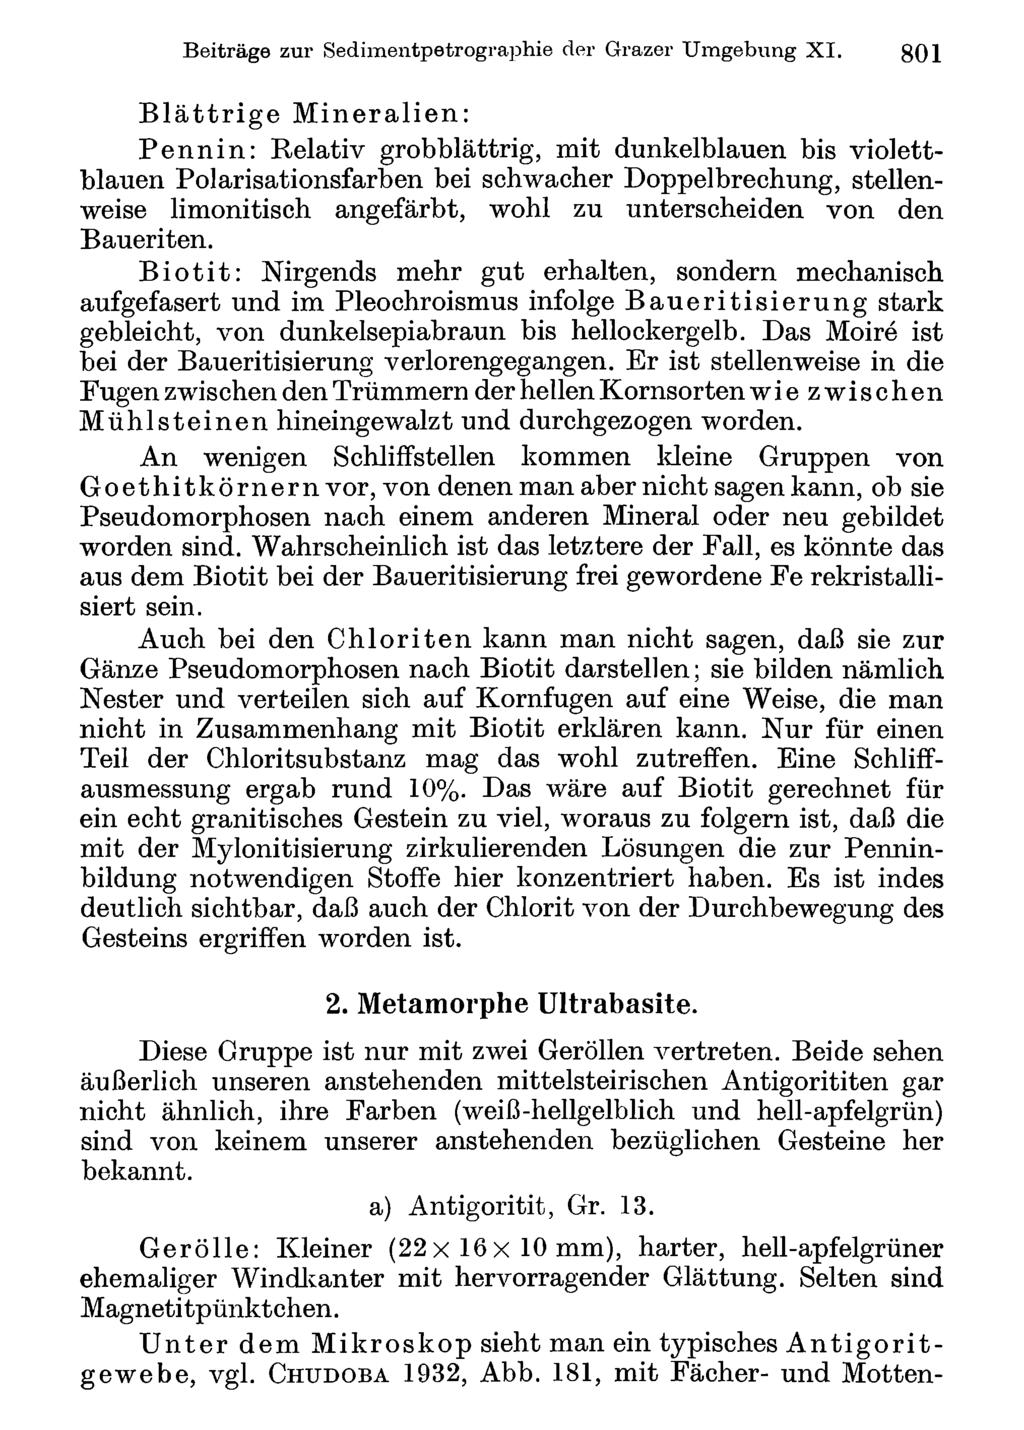 Beiträge Akademie zur Sedimentpetrographie d. Wissenschaften Wien; download der unter Grazer www.biologiezentrum.at Umgebung XI.